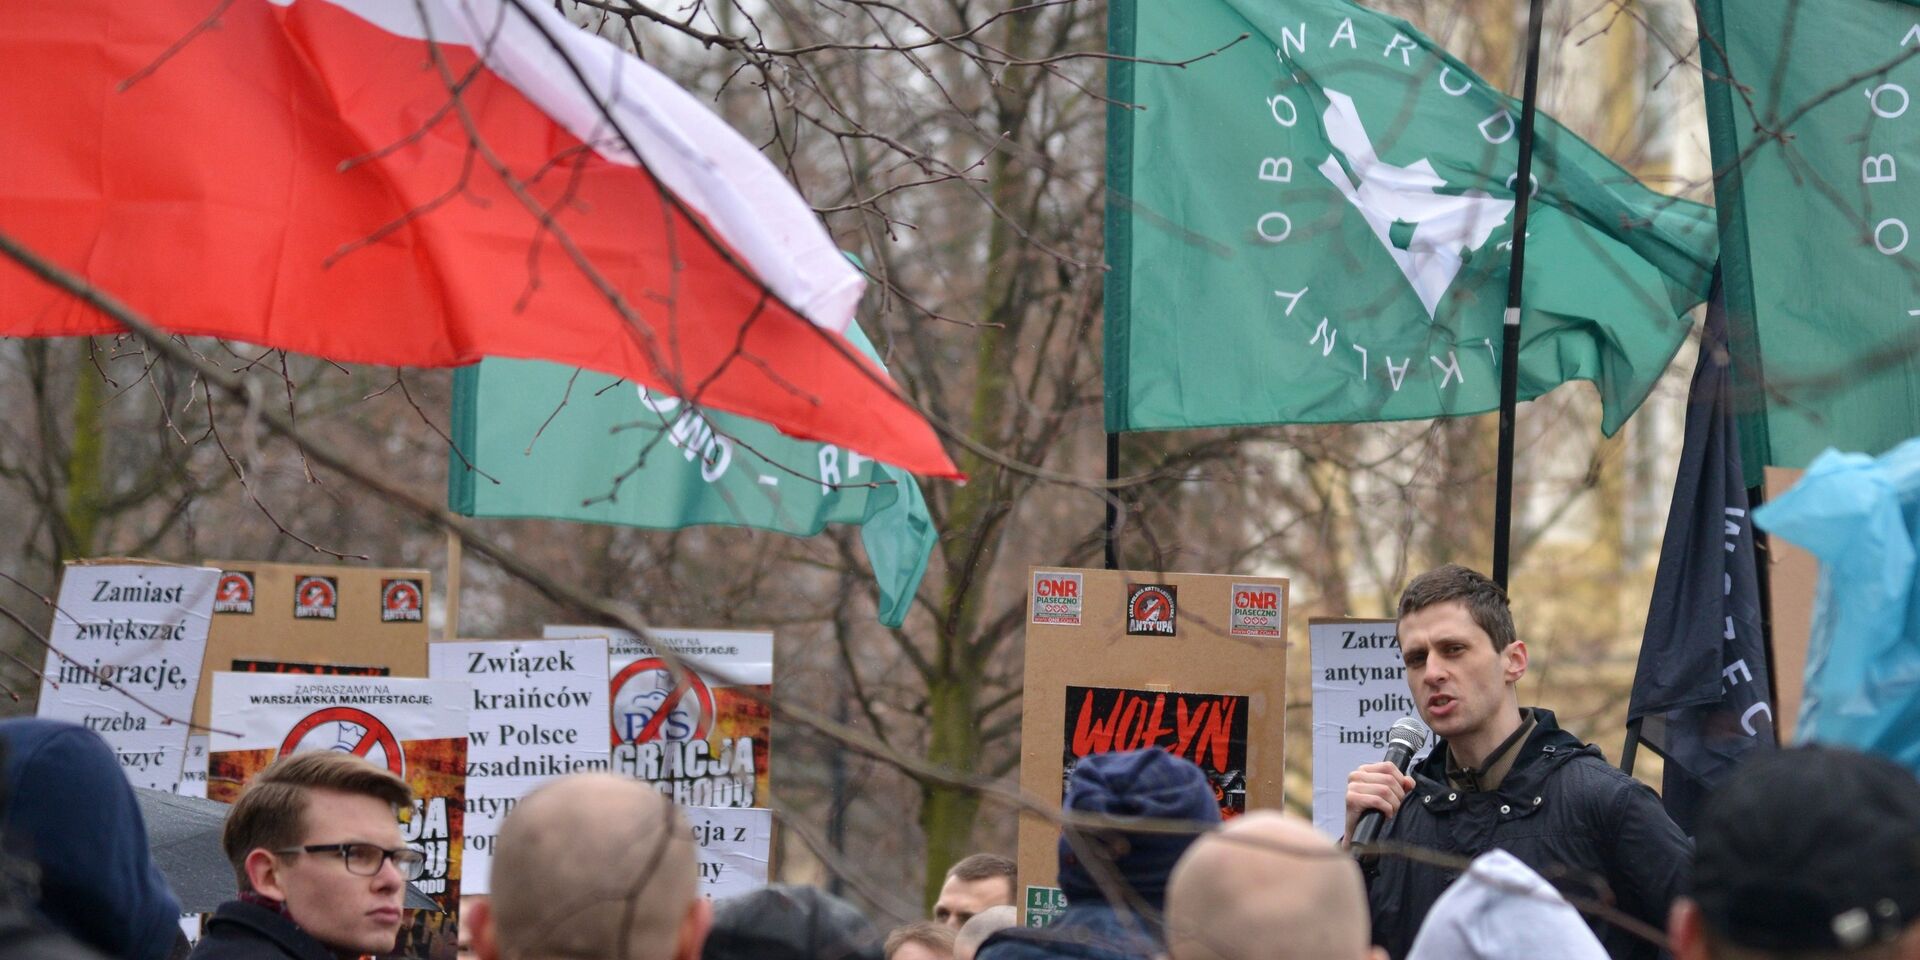 Участники митинга против возросшего числа украинских мигрантов в Варшаве. 18 марта 2017 года - ИноСМИ, 1920, 03.01.2021